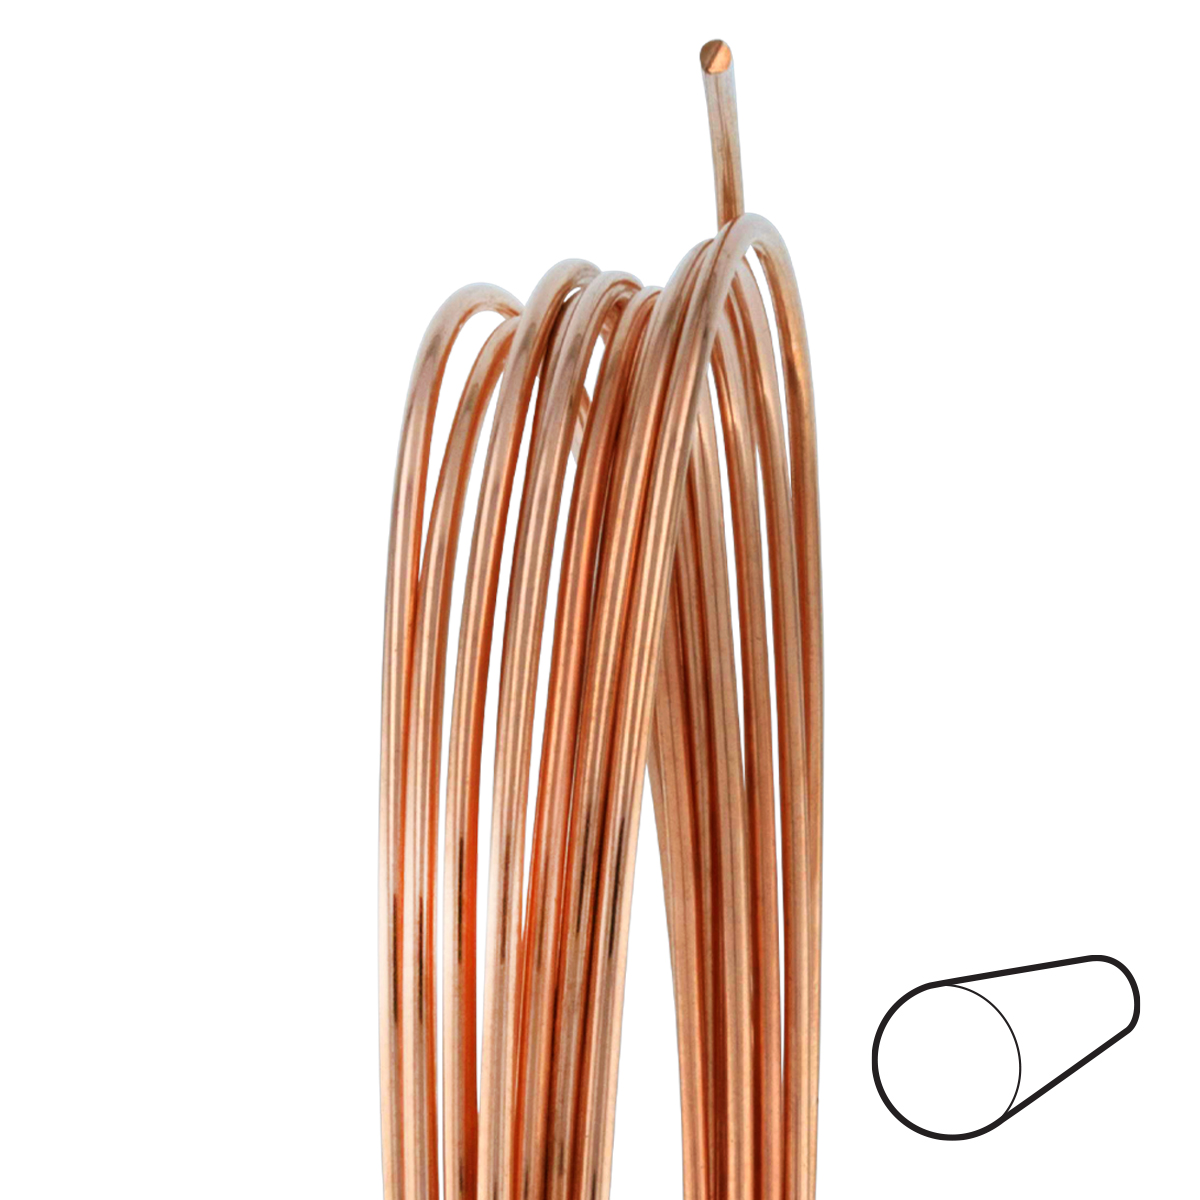 18 Gauge Round Dead Soft Copper Wire: Wire Jewelry